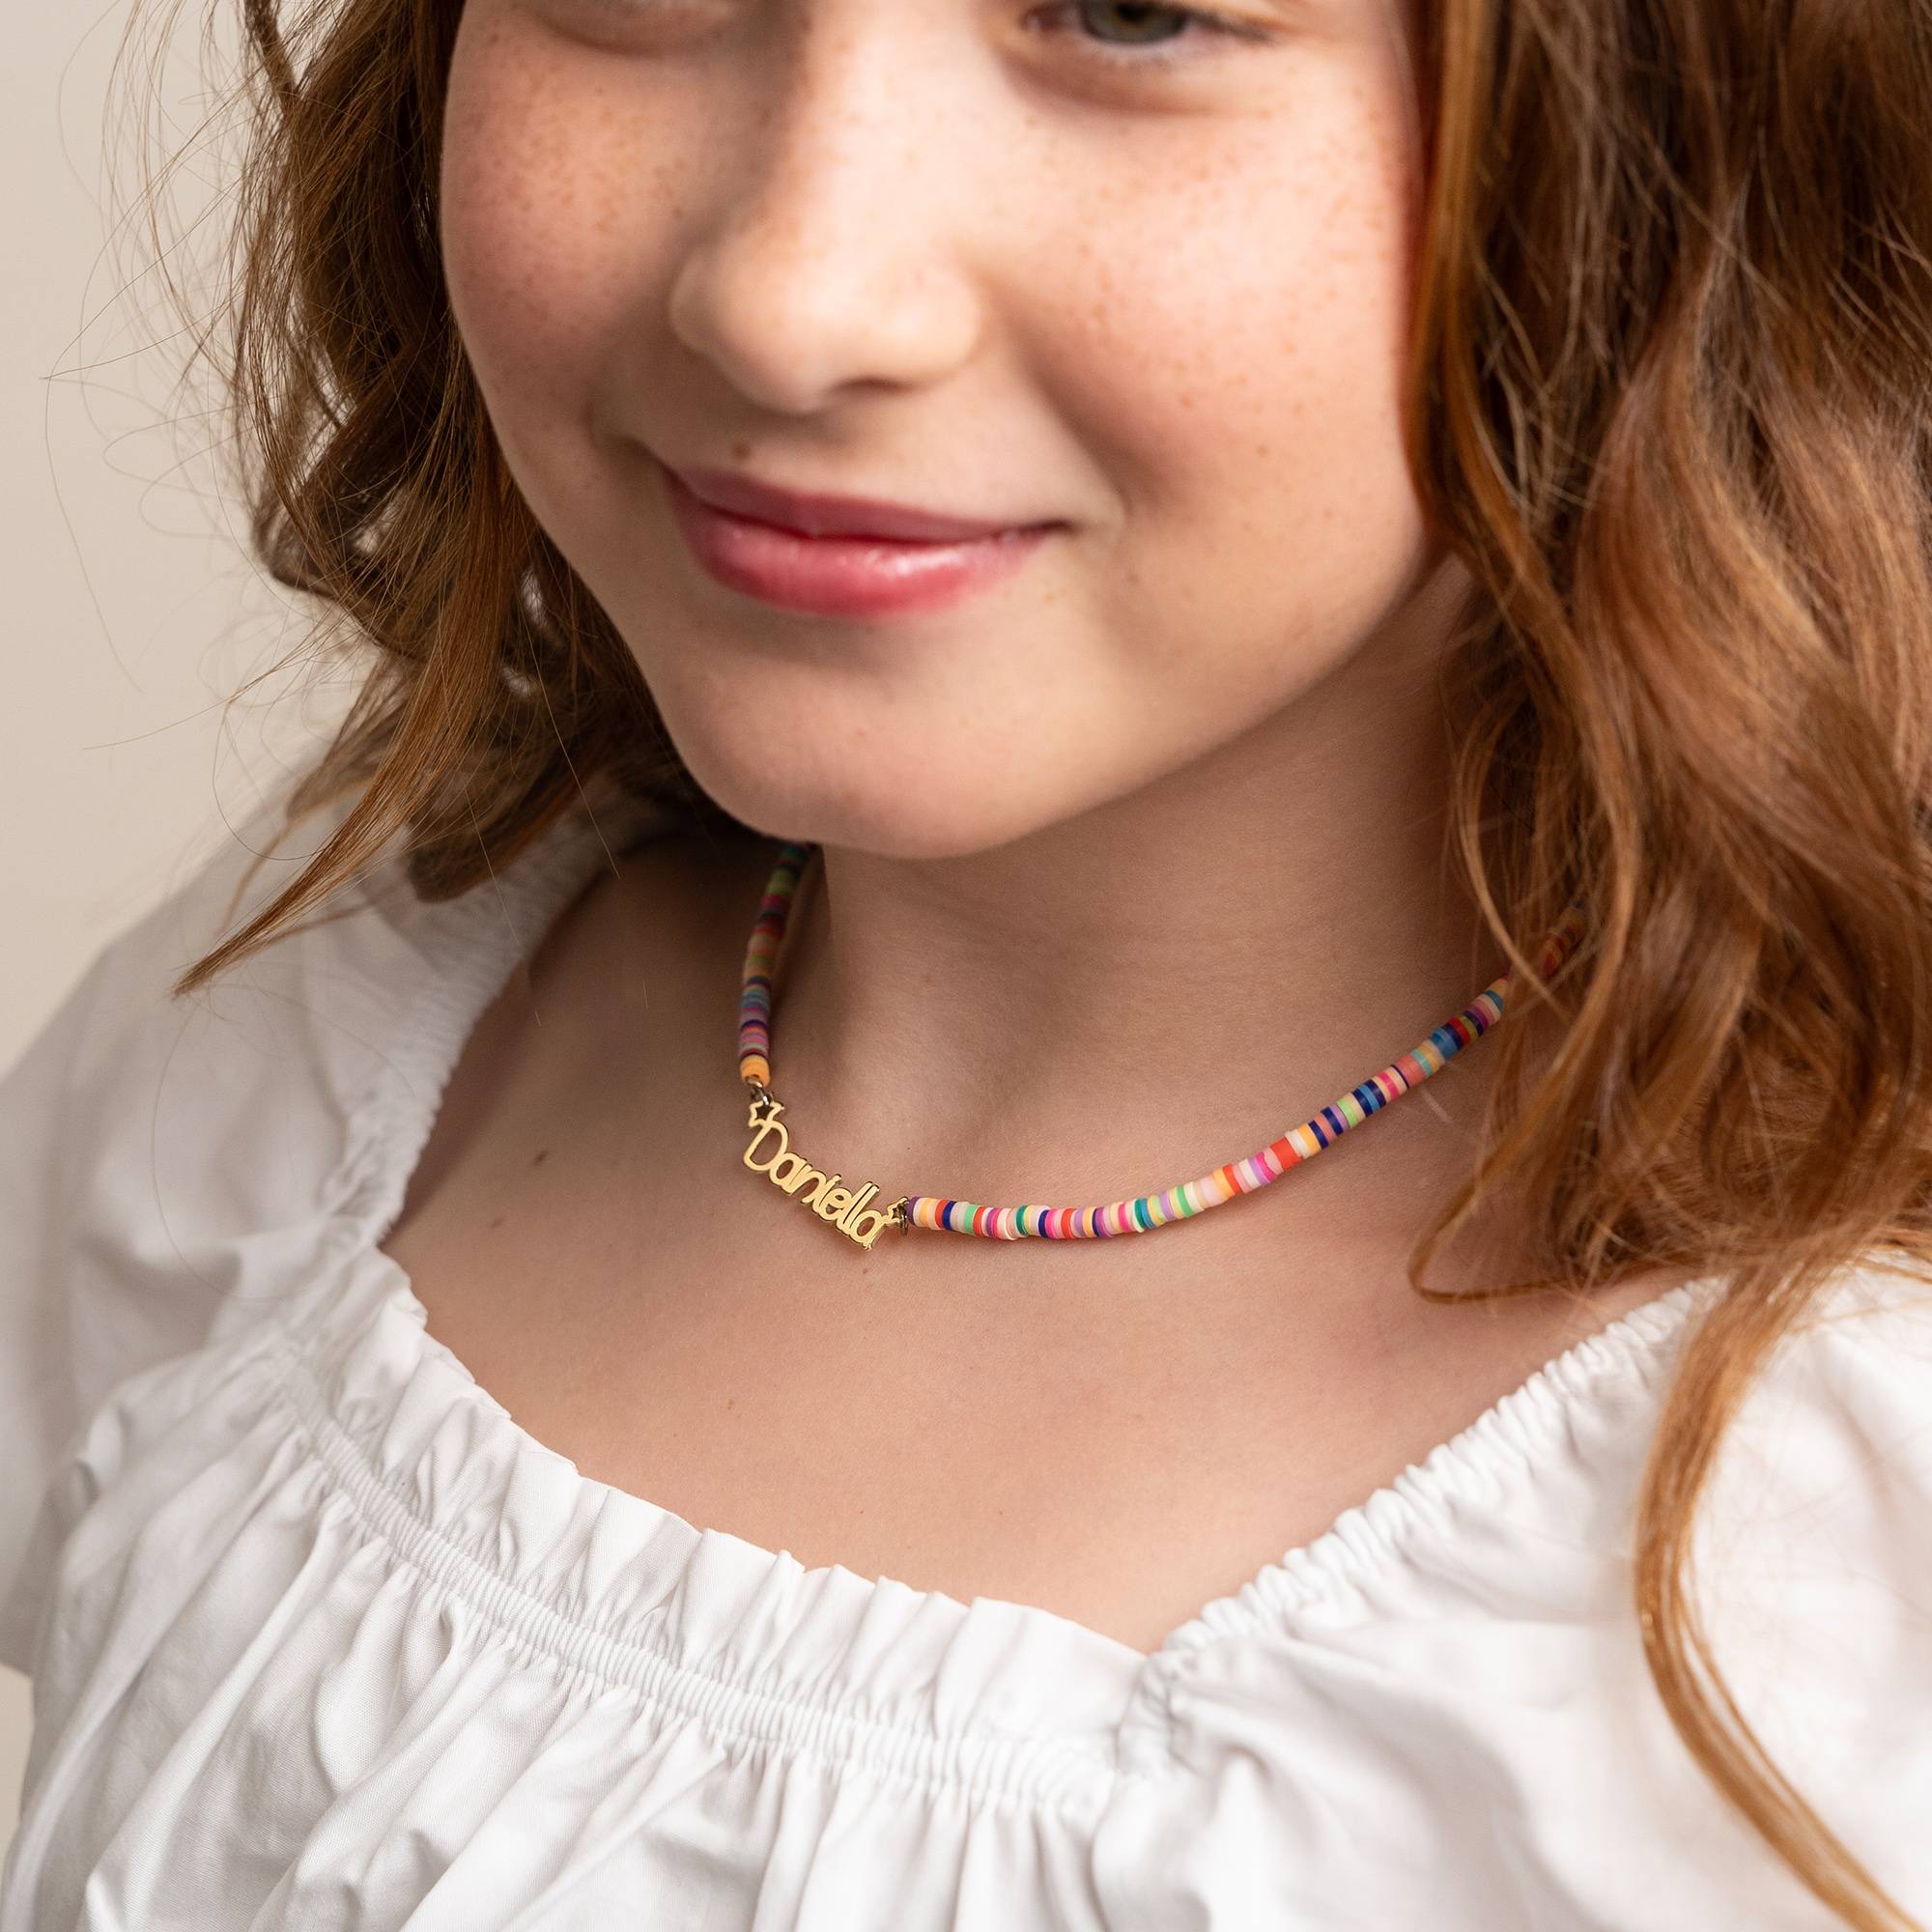 Regnbue halskæde til piger med navn - forgyldt-1 produkt billede